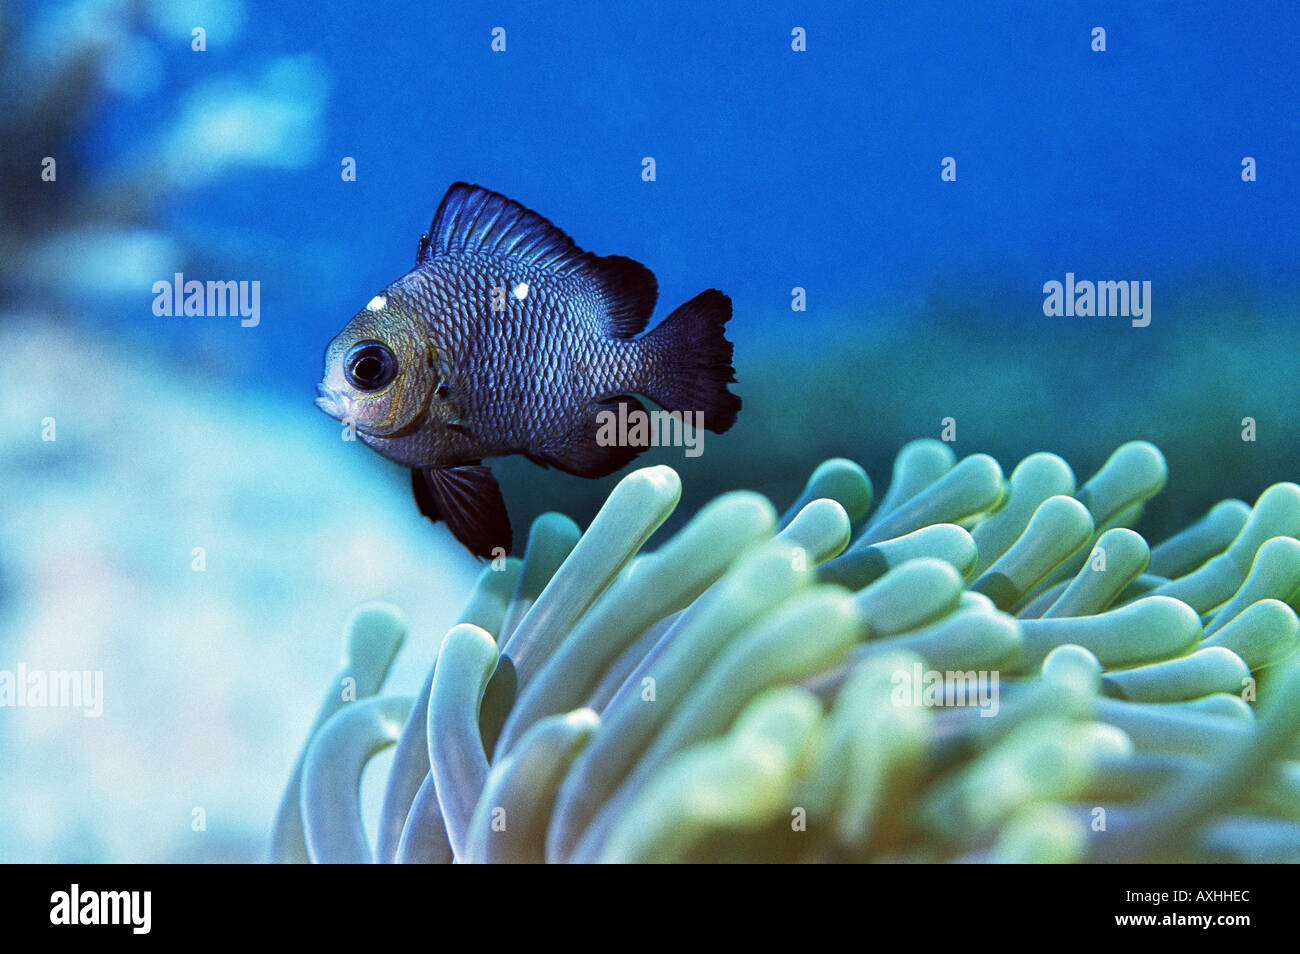 damselfish on anemone Stock Photo